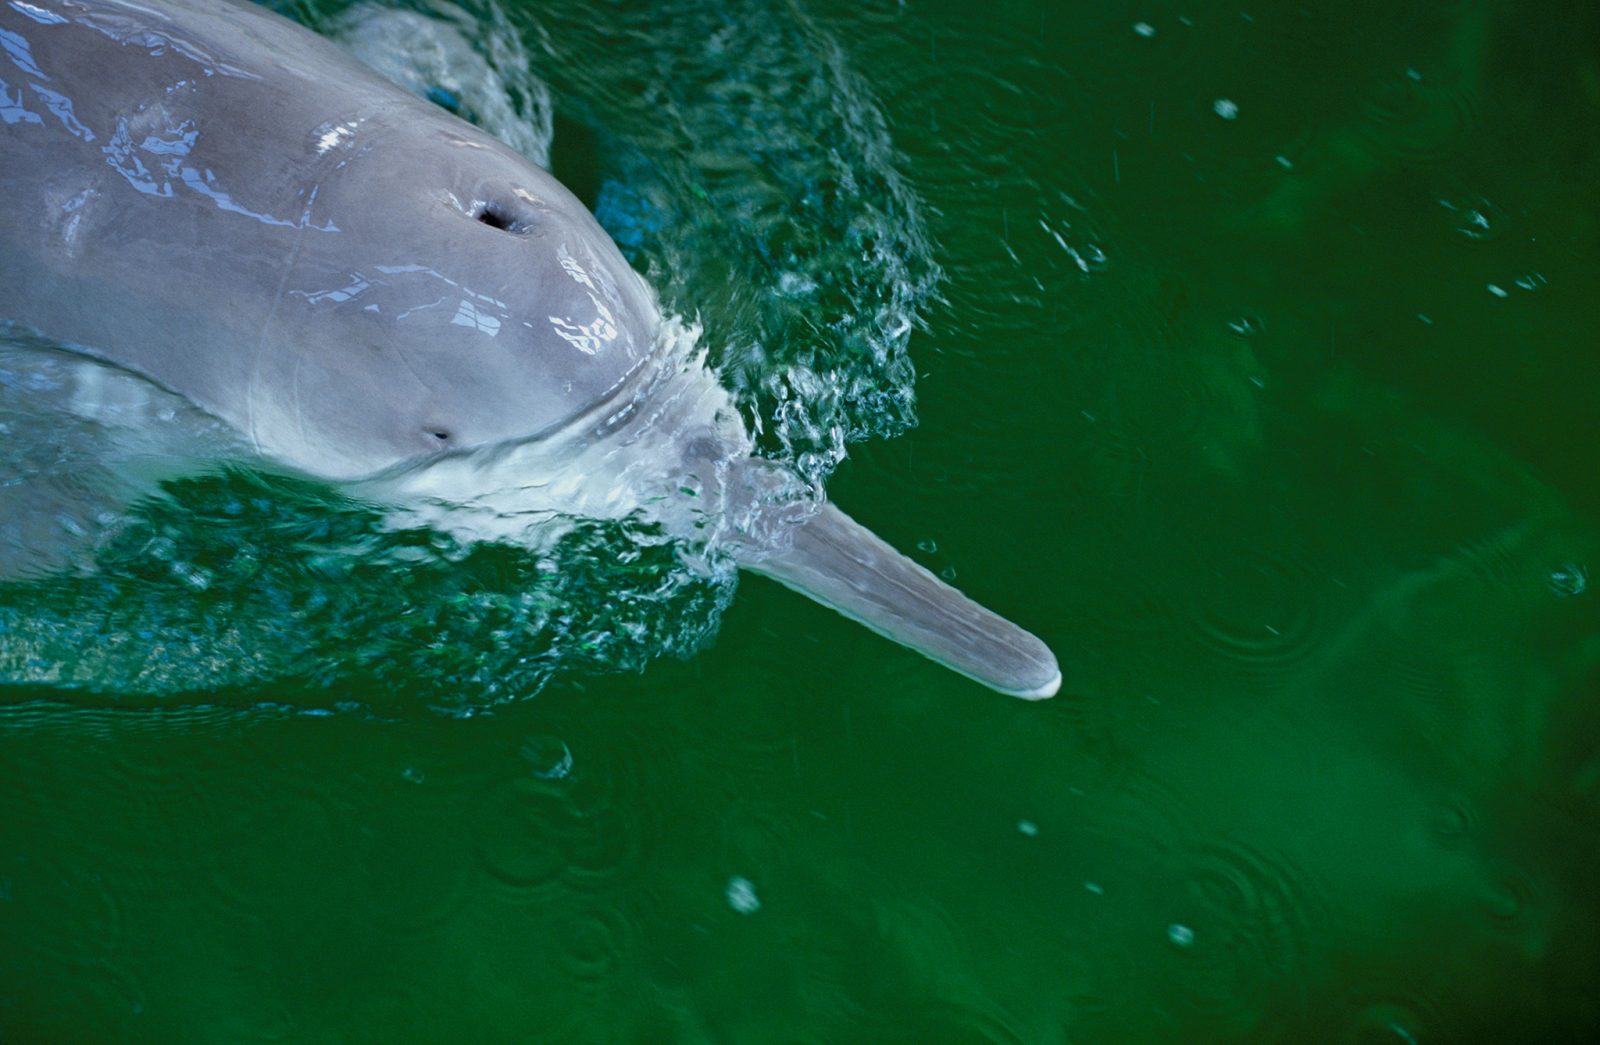 Imágenes del delfín fluvial chino